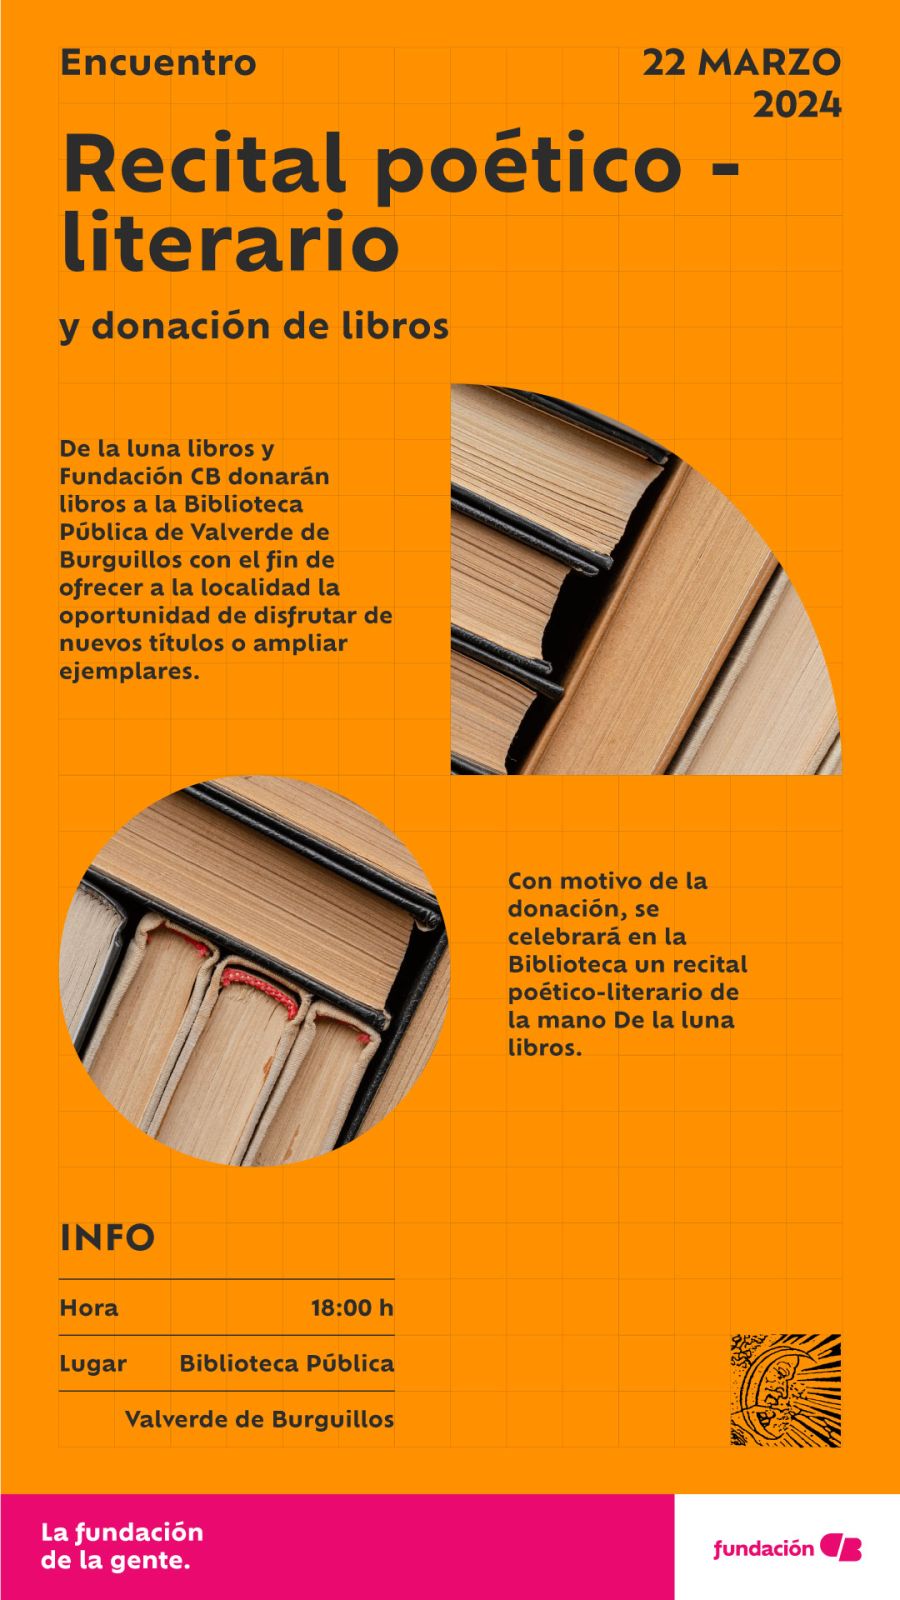 Donación de libros y recital-poético literario en Valverde de Burguillos (Badajoz)